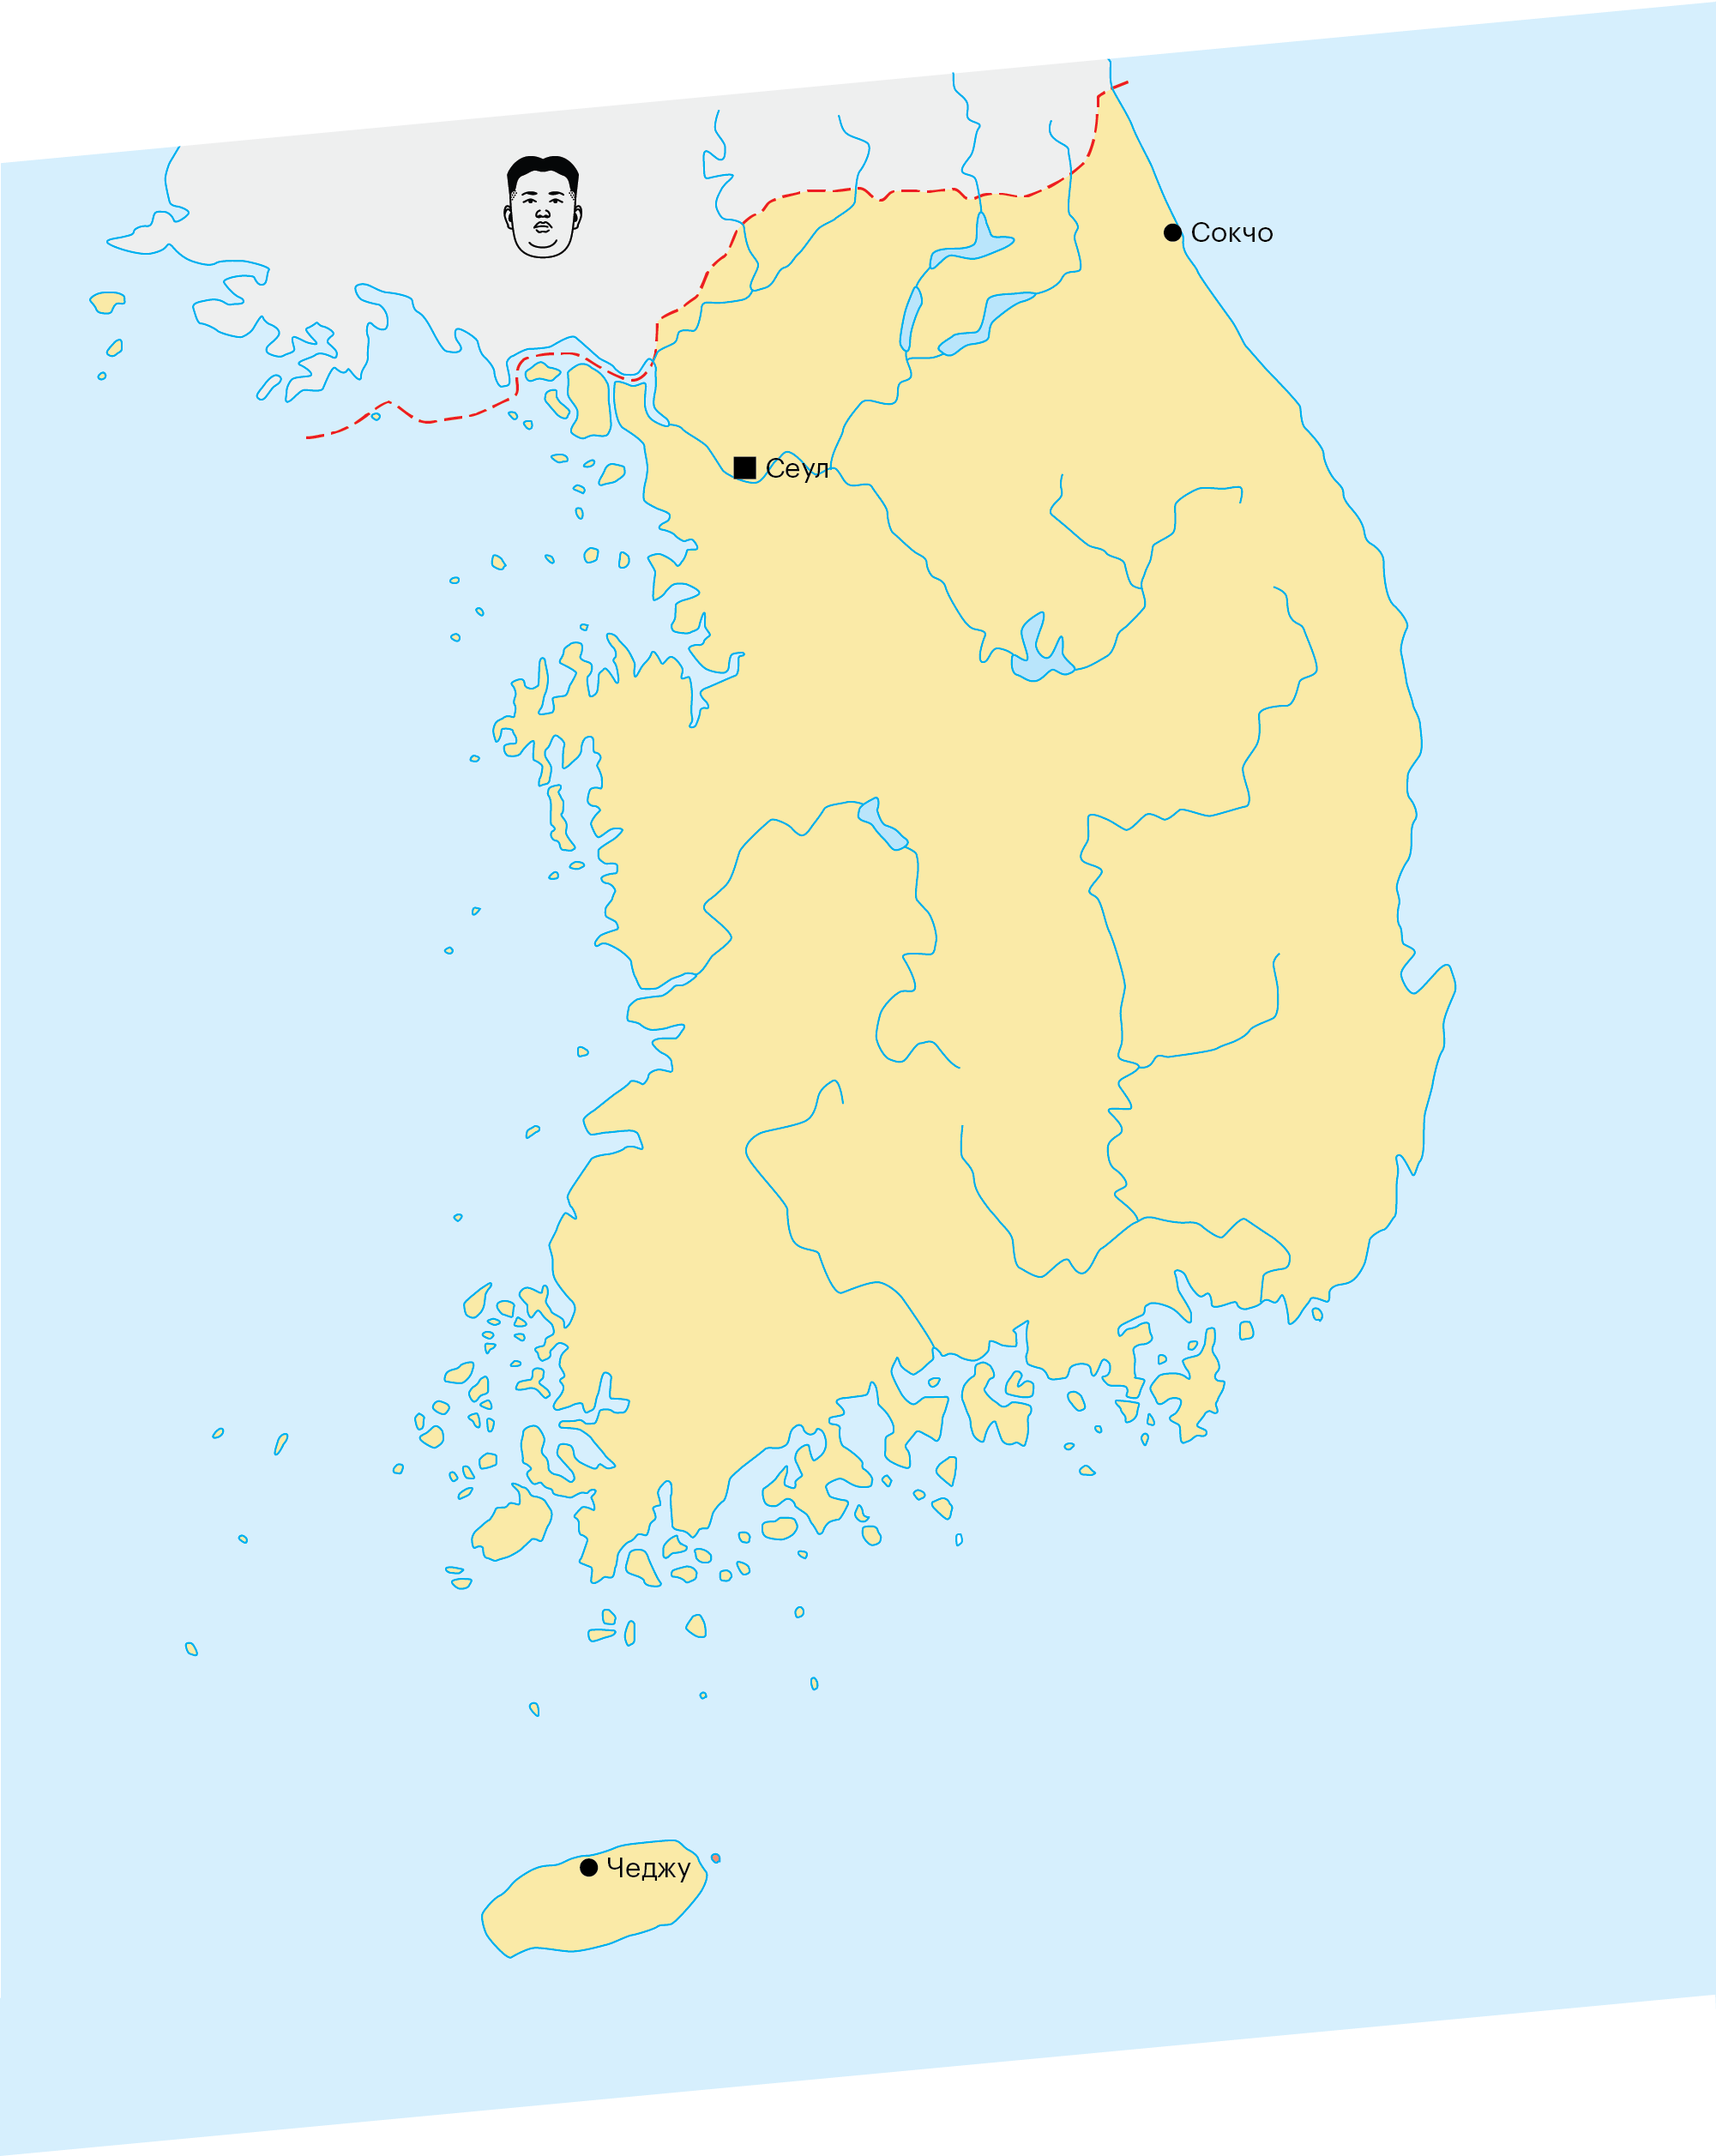 Наш маршрут по Южной Корее: Сеул — Чеджу — Сеул — Сокчо — Сеул. Кстати, в Южной Корее плохо работают «Гугл⁠-⁠карты»: например, они не показывают пешеходные маршруты. Есть версия, что таким образом южане скрываются от соседей из Северной Кореи